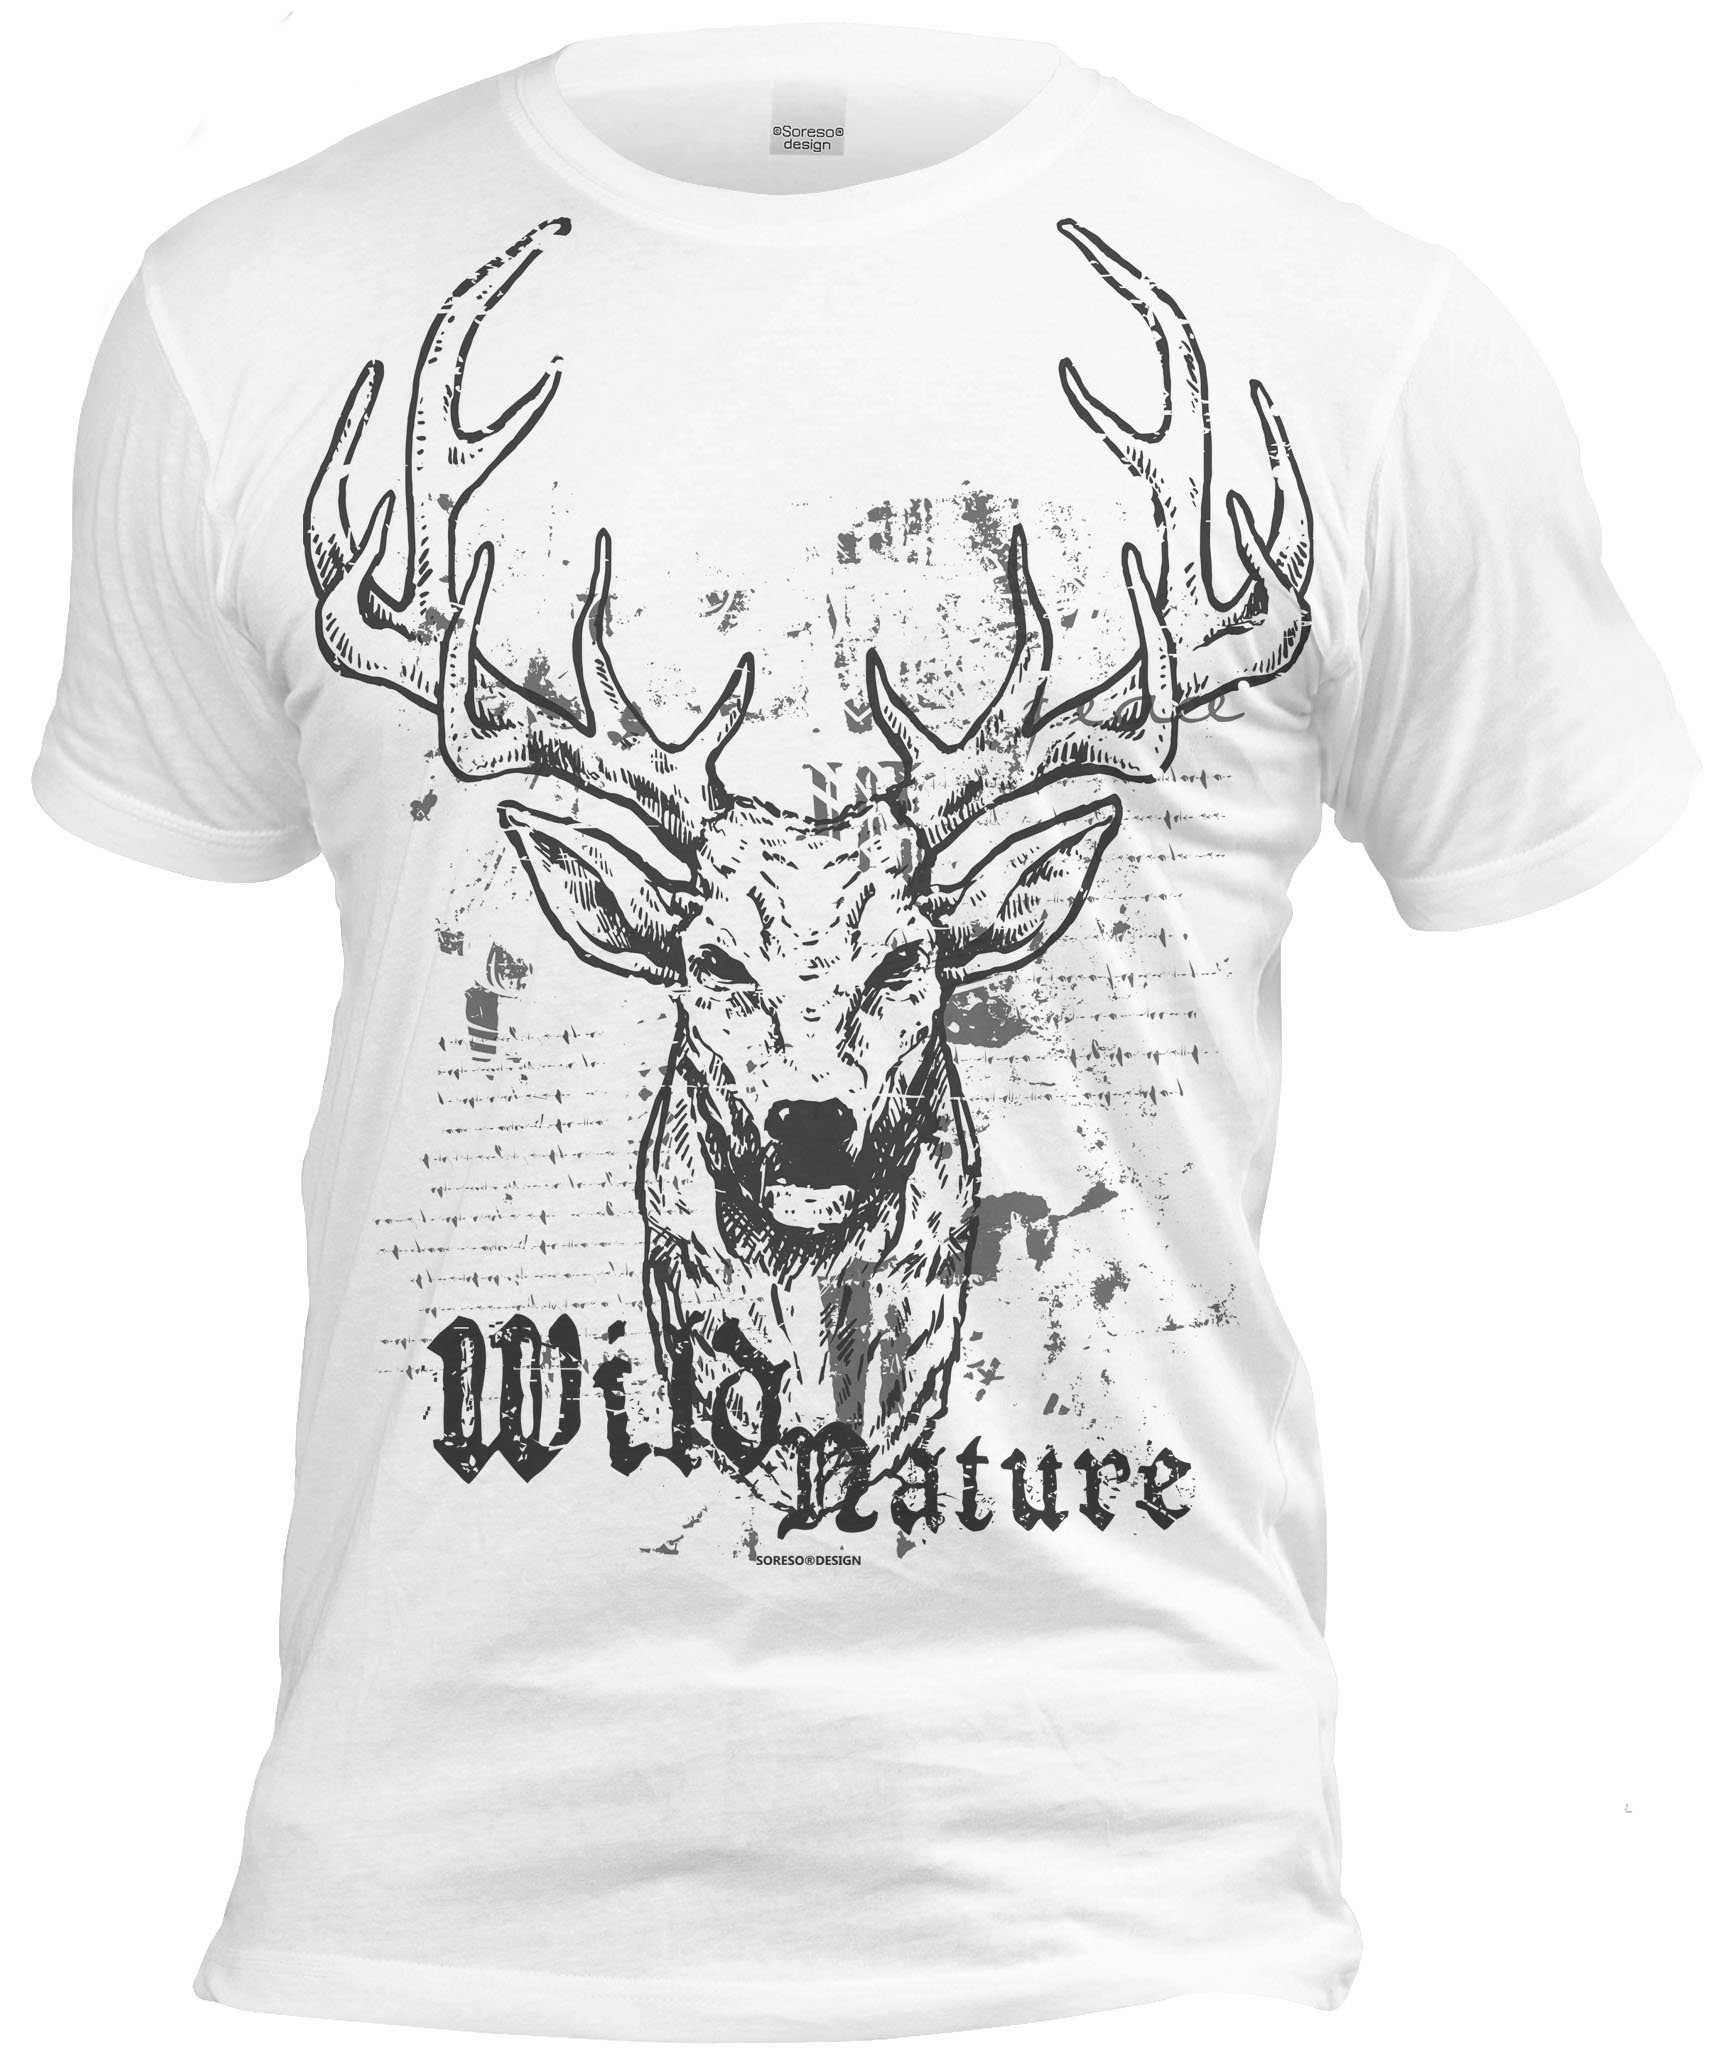 Soreso® T-Shirt Trachtenshirt Wild Nature Herren (Ein T-Shirt) Trachten T-Shirt Männer weiss